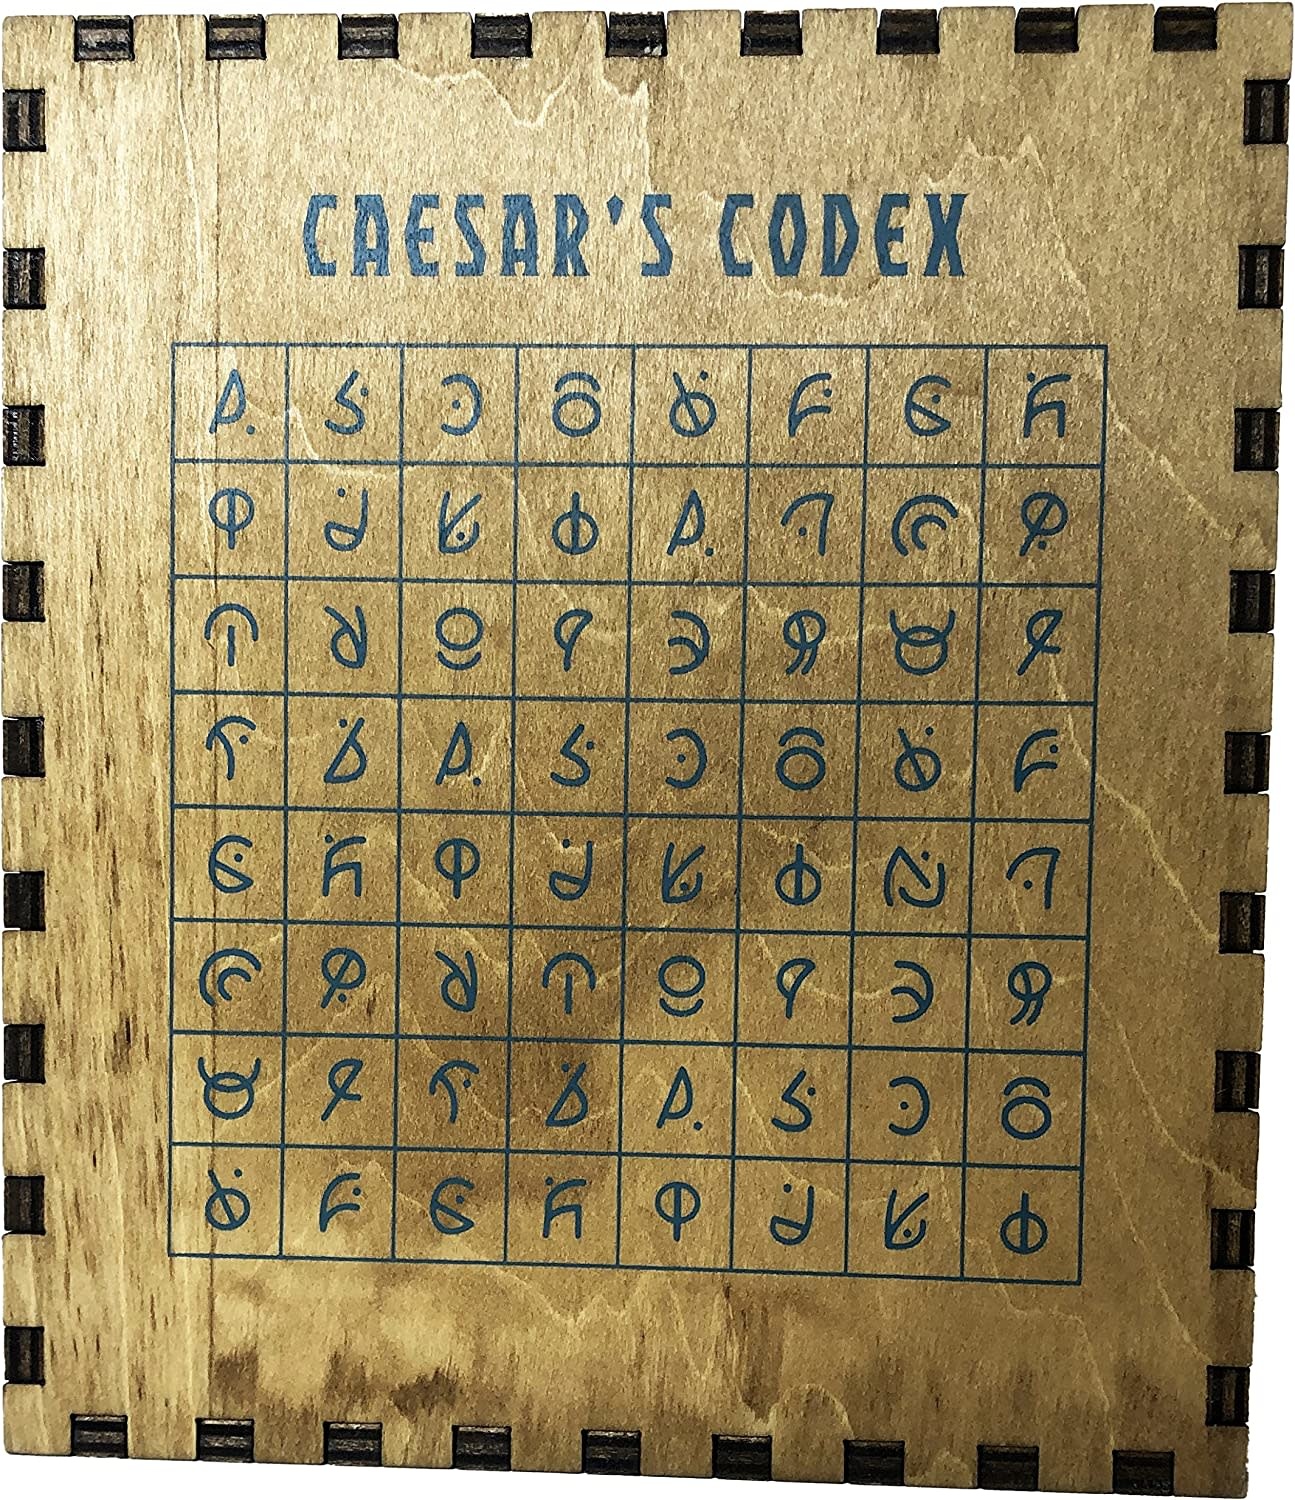 Caesar's Codex